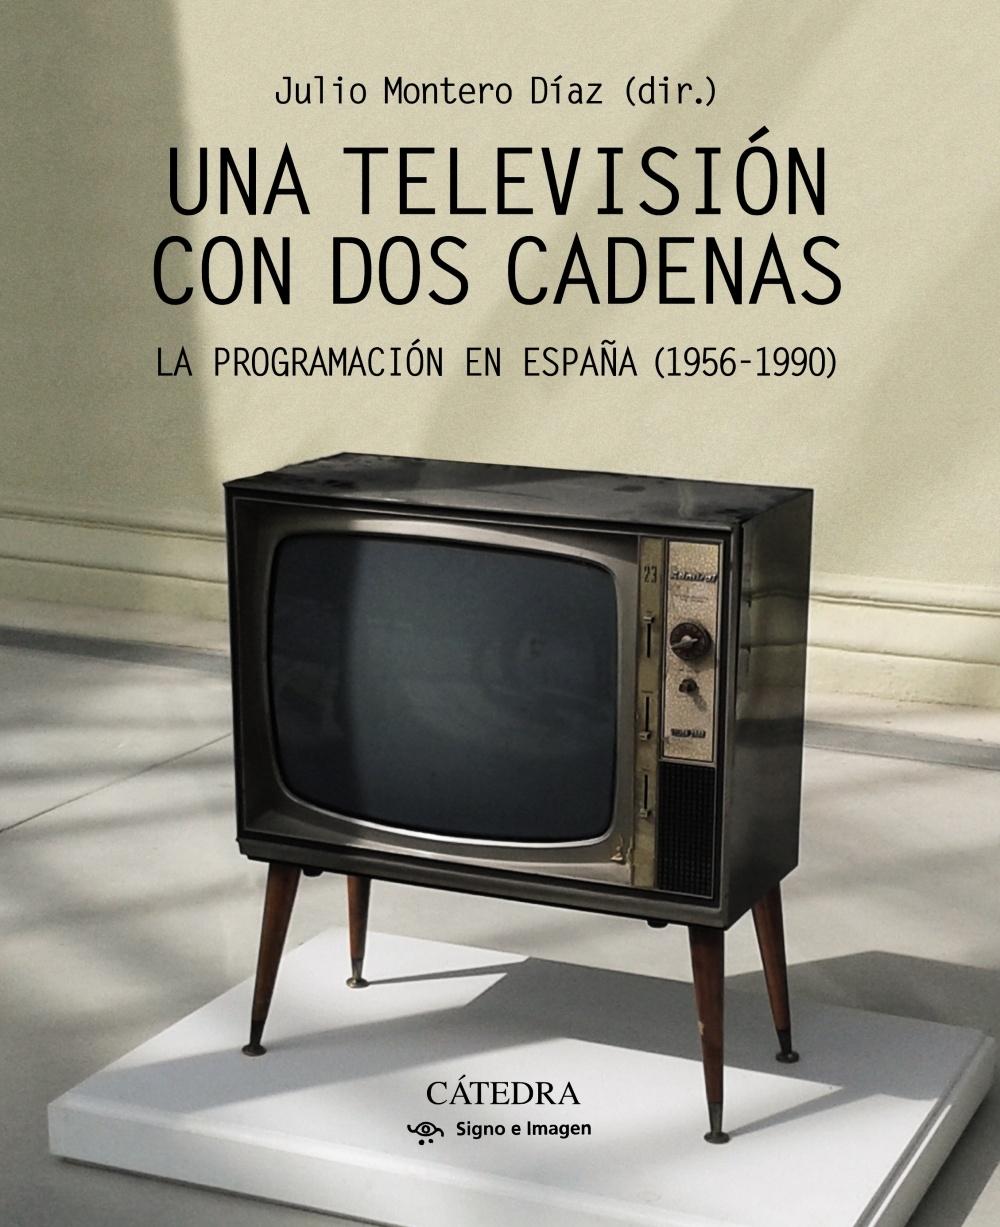 TELEVISION CON DOS CADENAS, UNA "LA PROGRAMACION EN ESPAÑA 1956-1990"